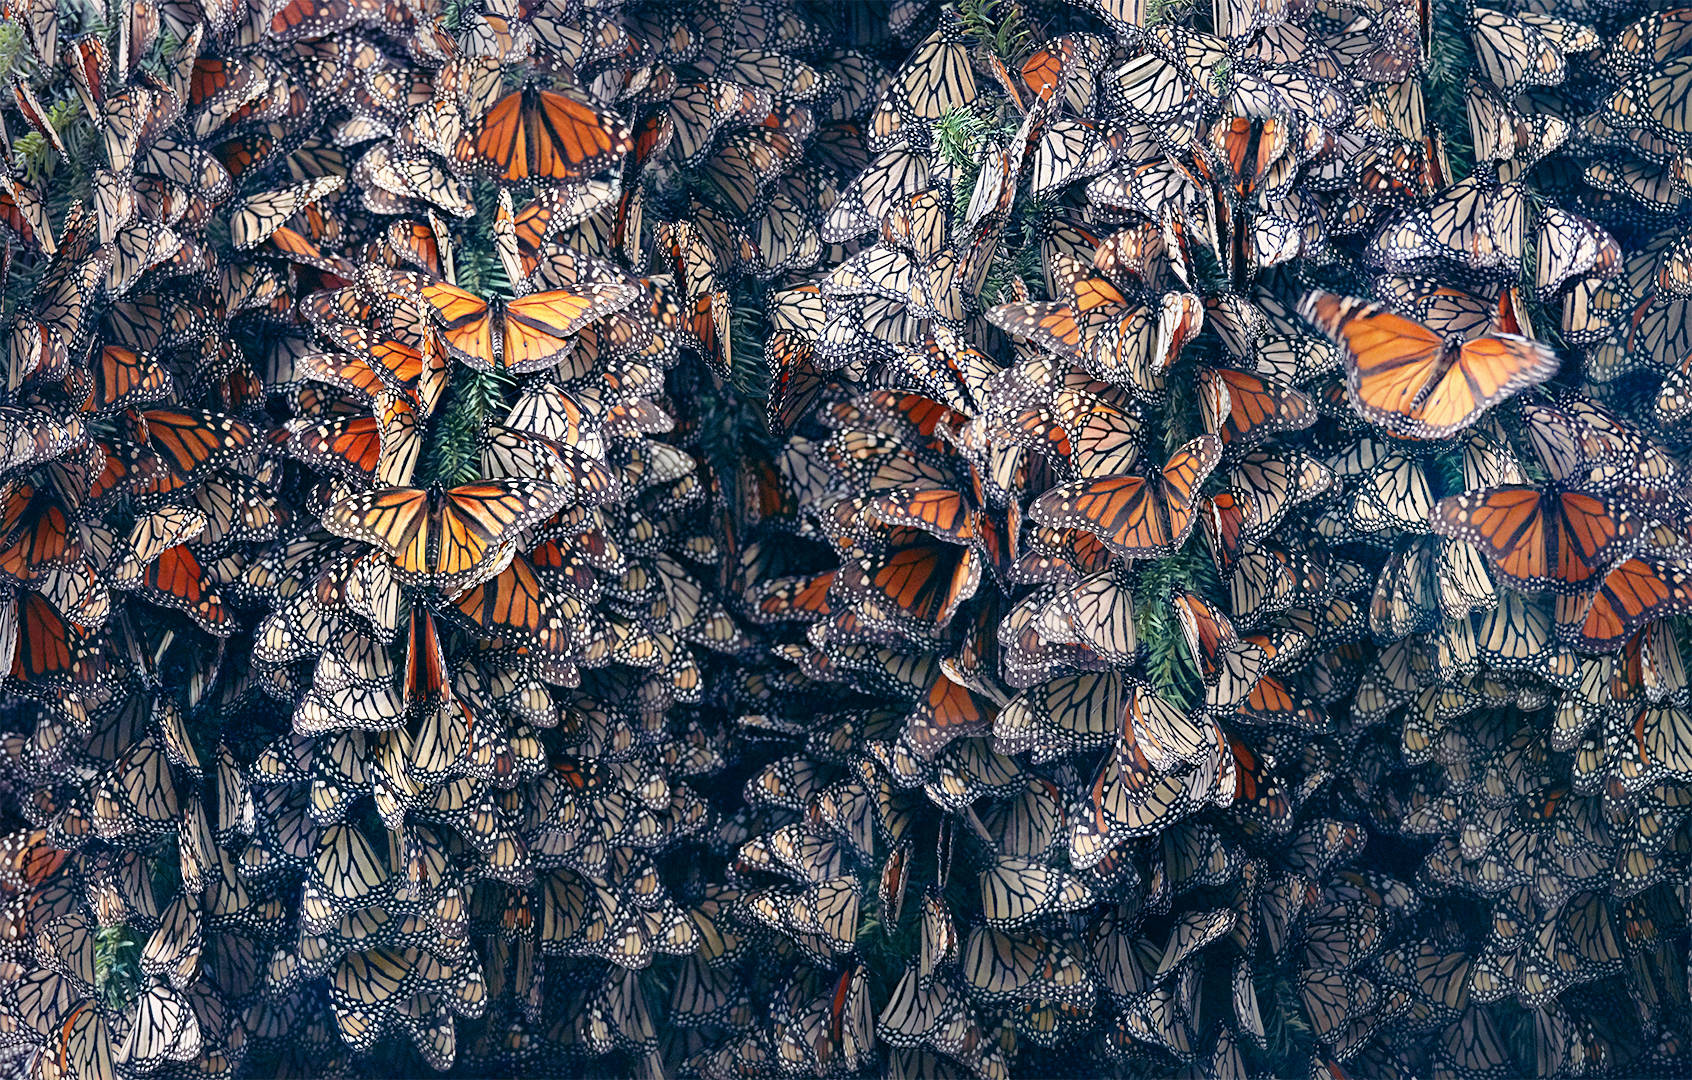 As borboletas monarca alimentam-se de asclépias, uma planta tóxica que as torna venenosas para potenciais predadores. No entanto, os herbicidas estão a destruir milhões de hectares desta fonte de alimento essencial para as borboletas a cada ano que passa. 